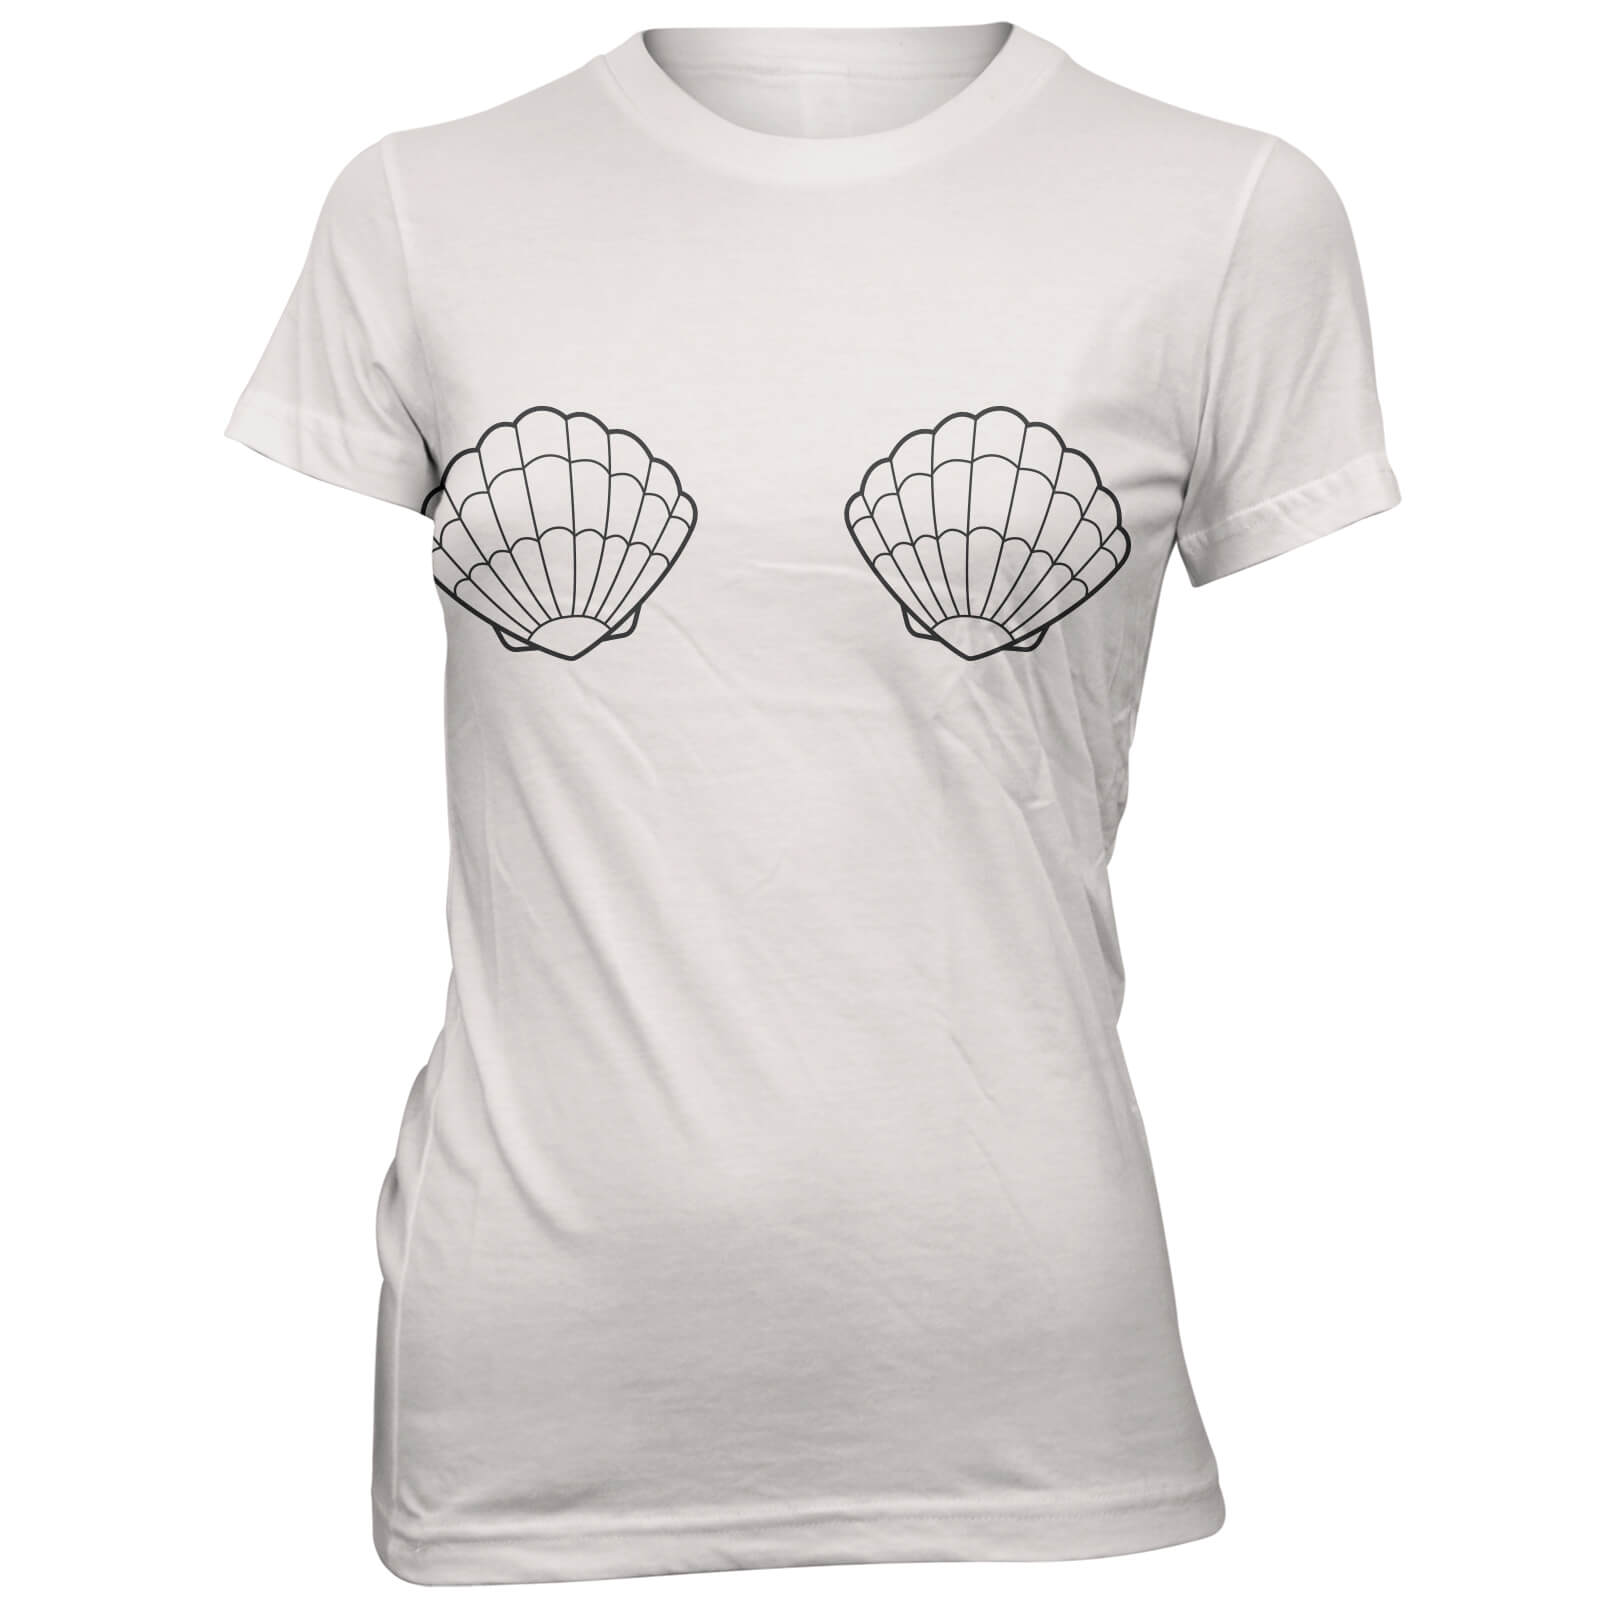 Small Shells Women's White T-Shirt - S - White